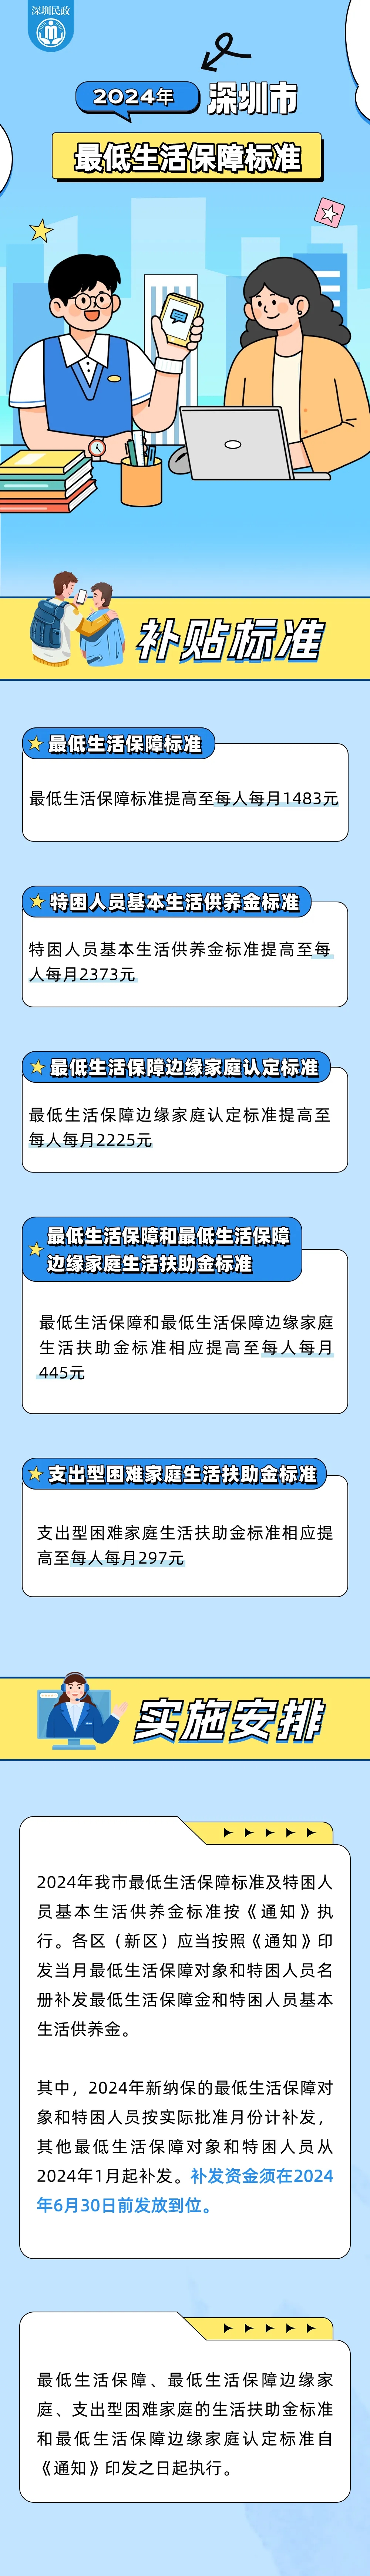 连续8年提高标准 深圳低保涨至每人每月1483元